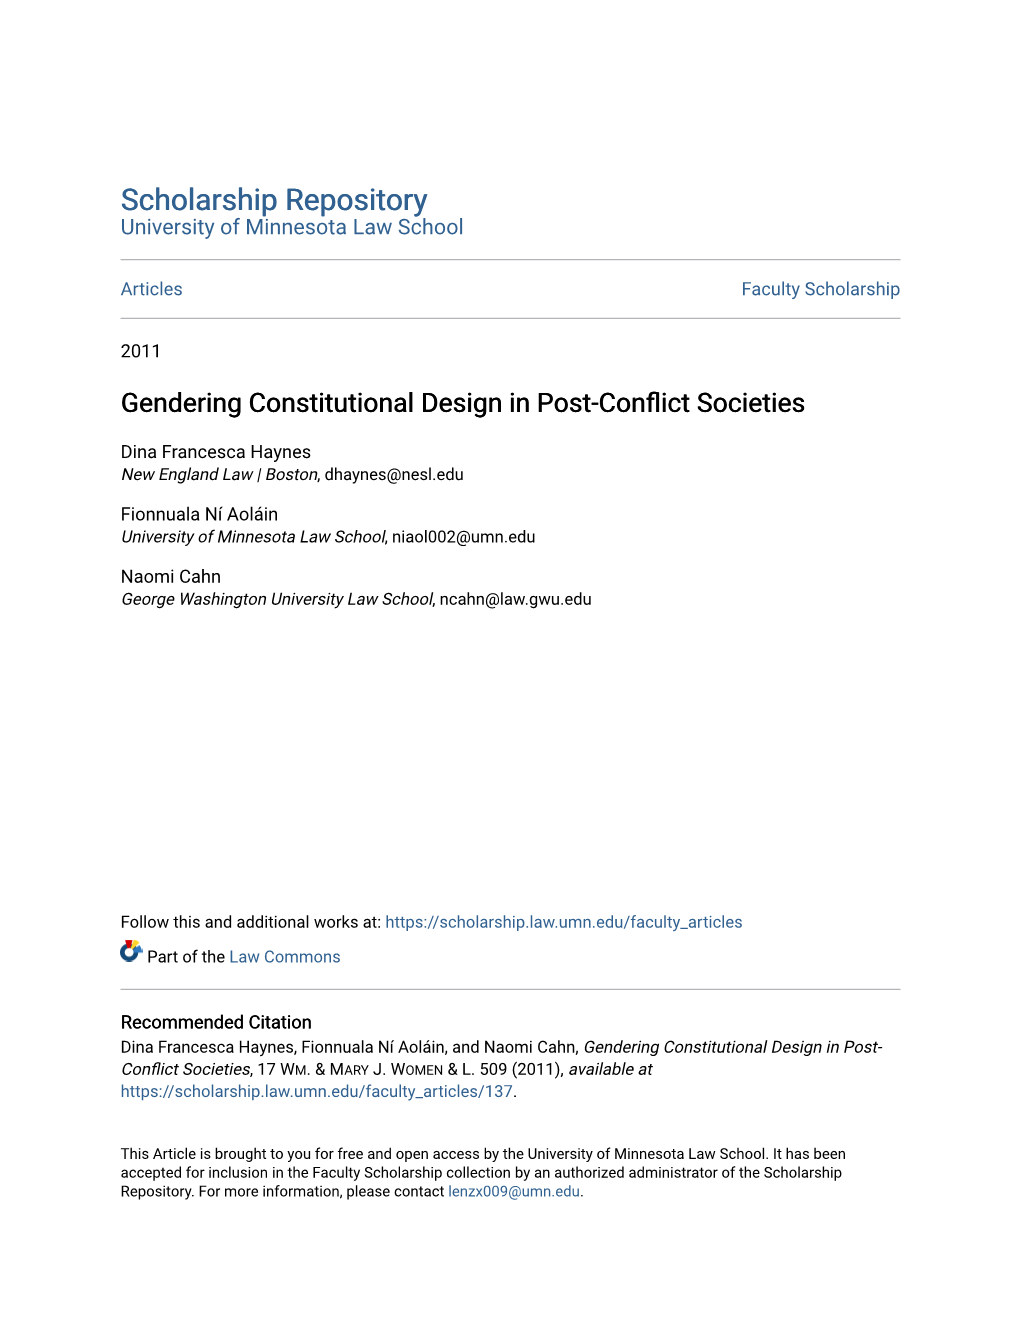 Gendering Constitutional Design in Post-Conflict Societies